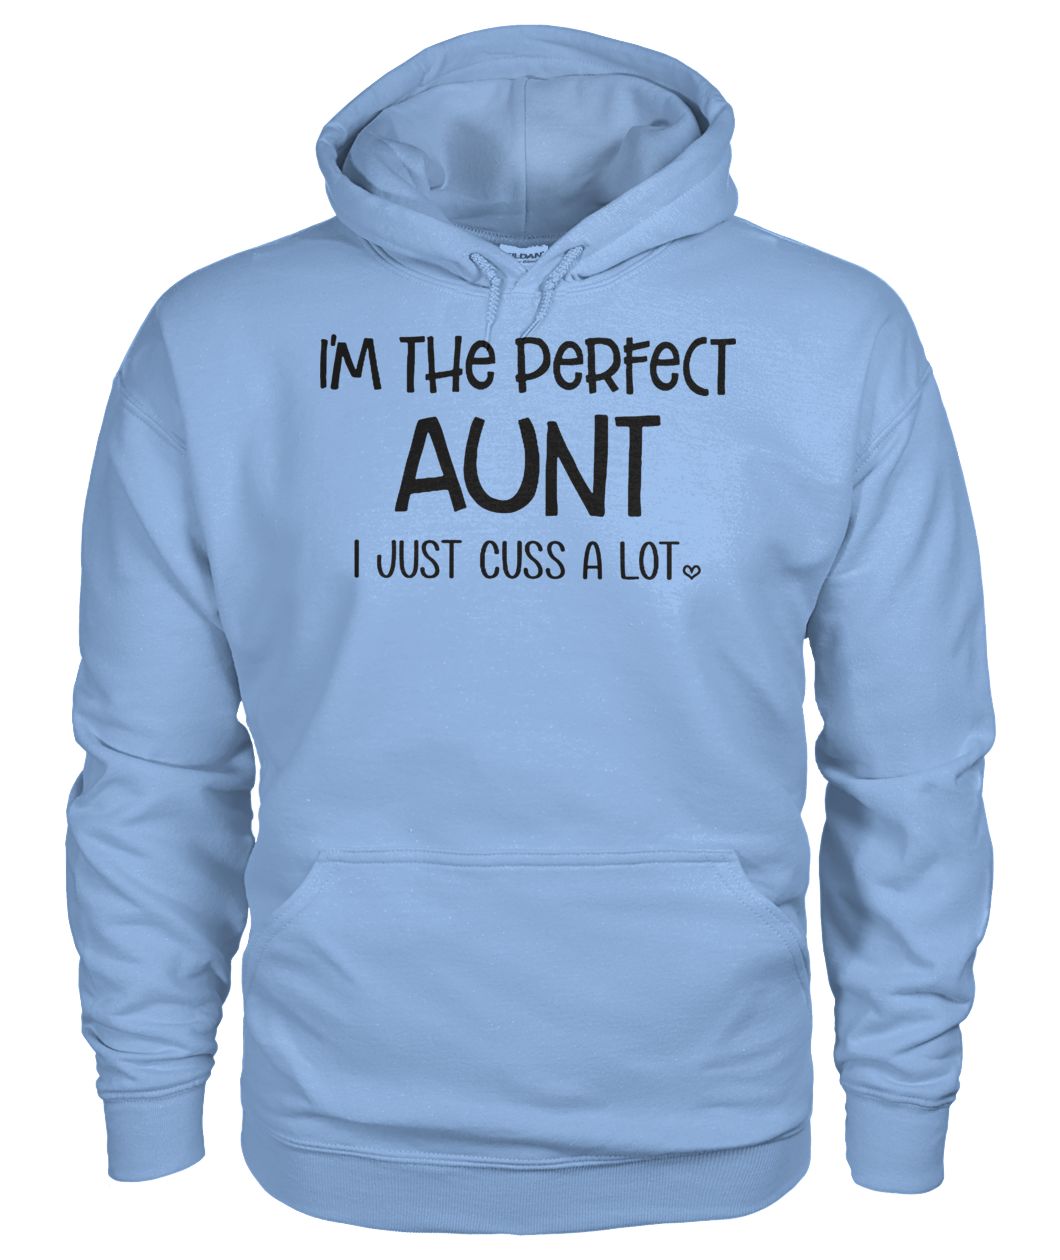 I'm the perfect aunt I just cuss a lot gildan hoodie